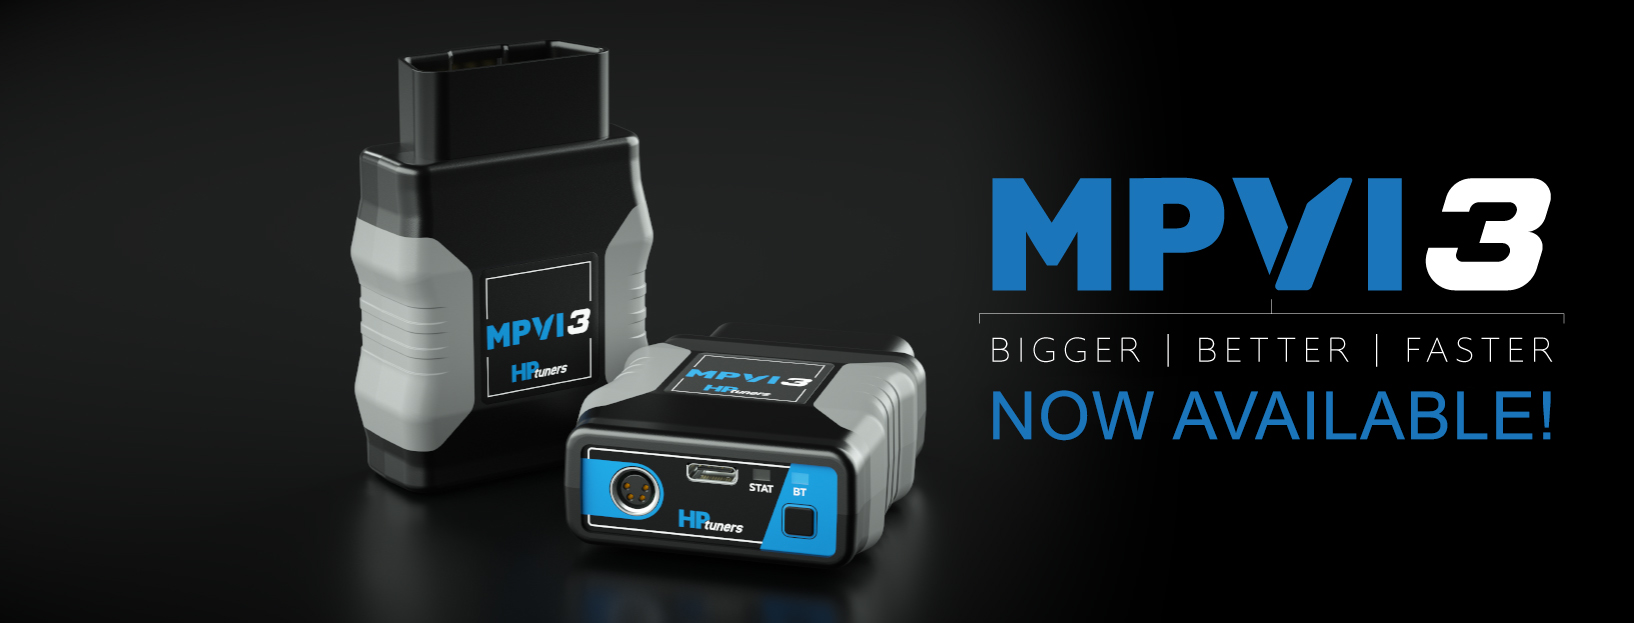 The new HPTuners MPVI3